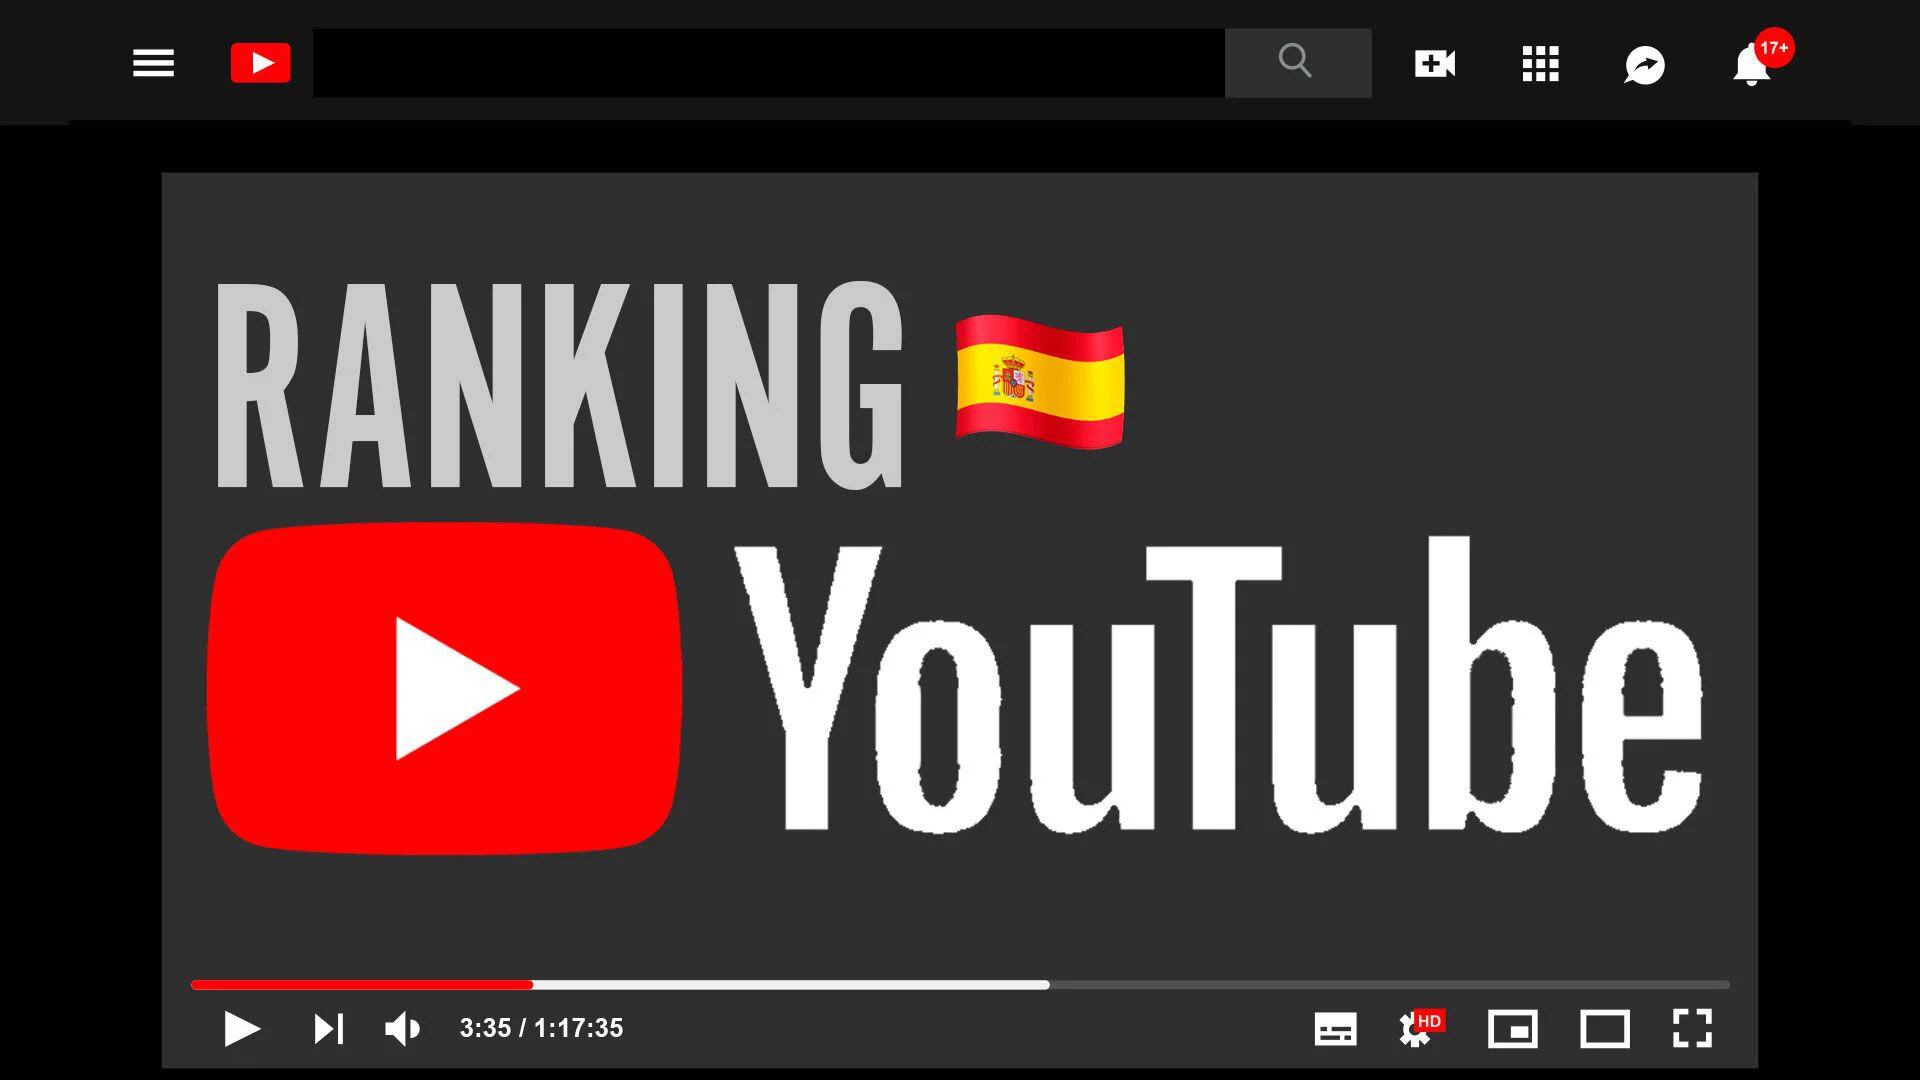 ¿Cuáles son las nuevas tendencias en YouTube en España?